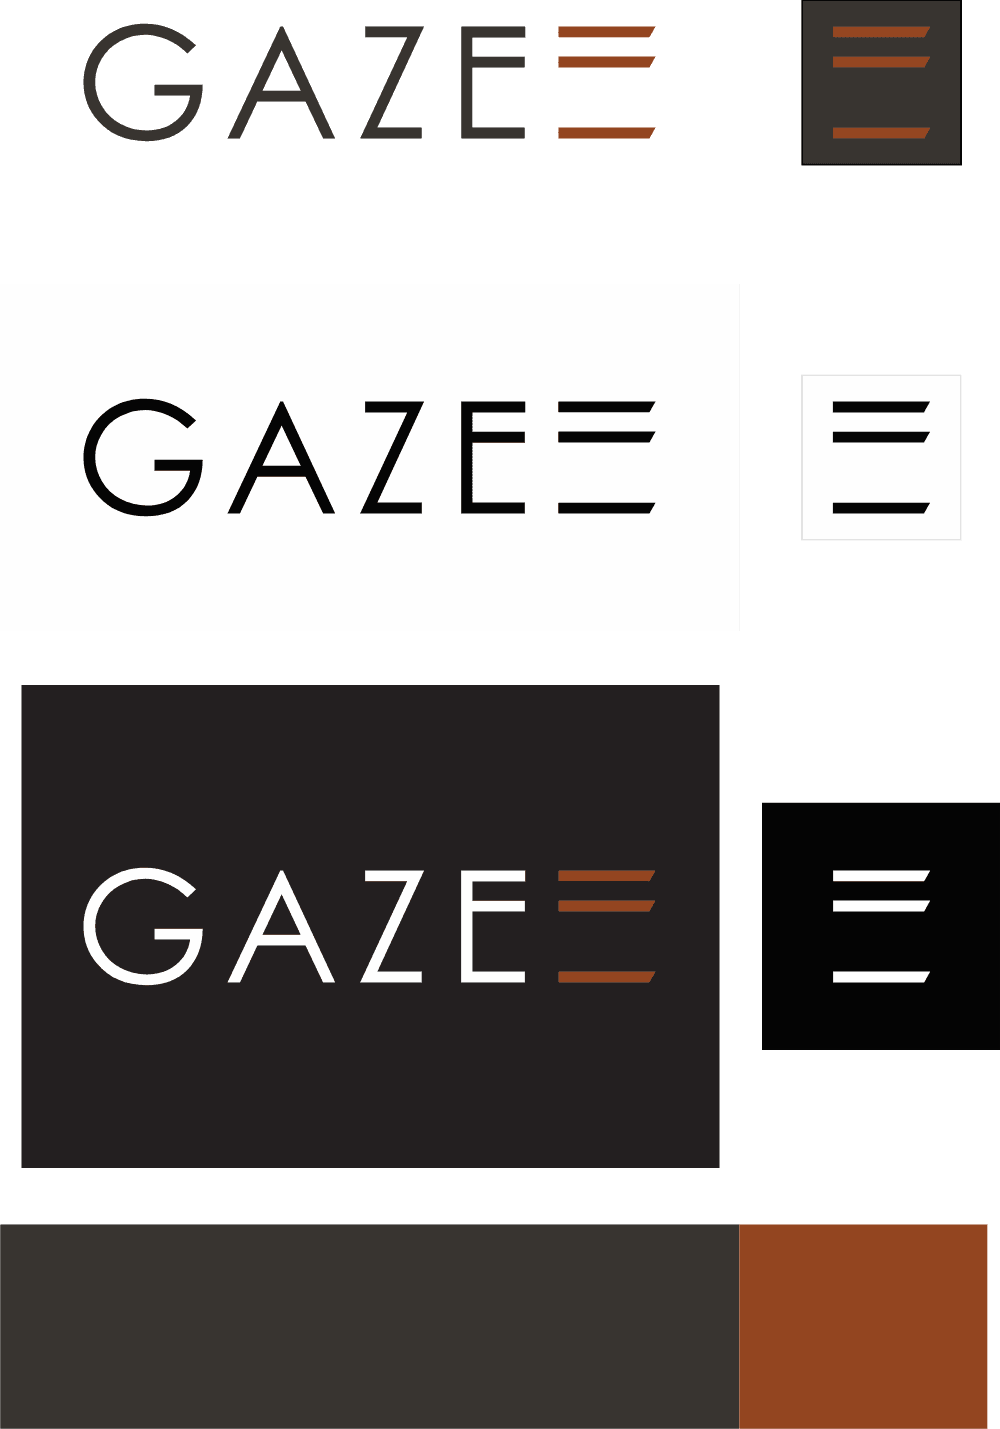 Gaze Logo download